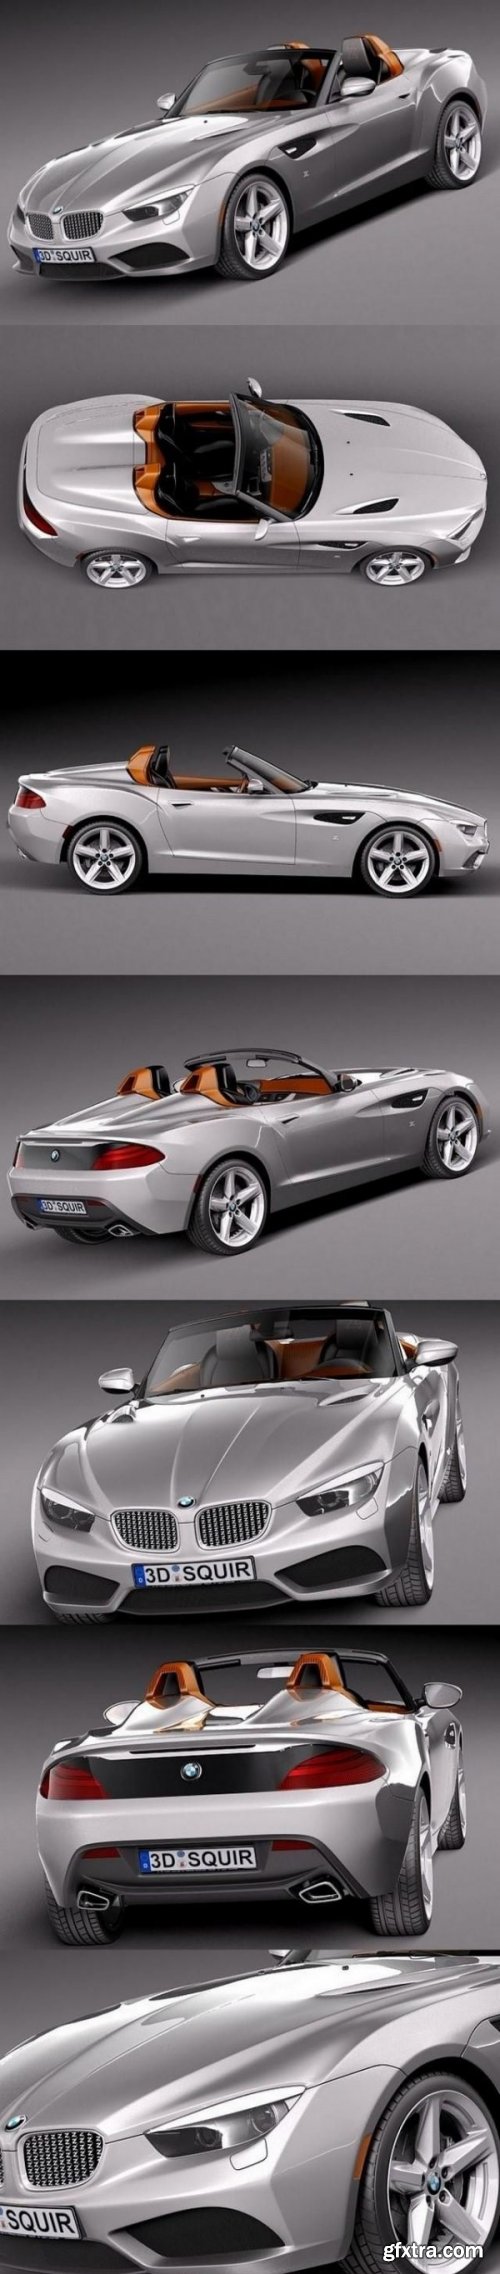 BMW Zagato Roadster Concept 2013